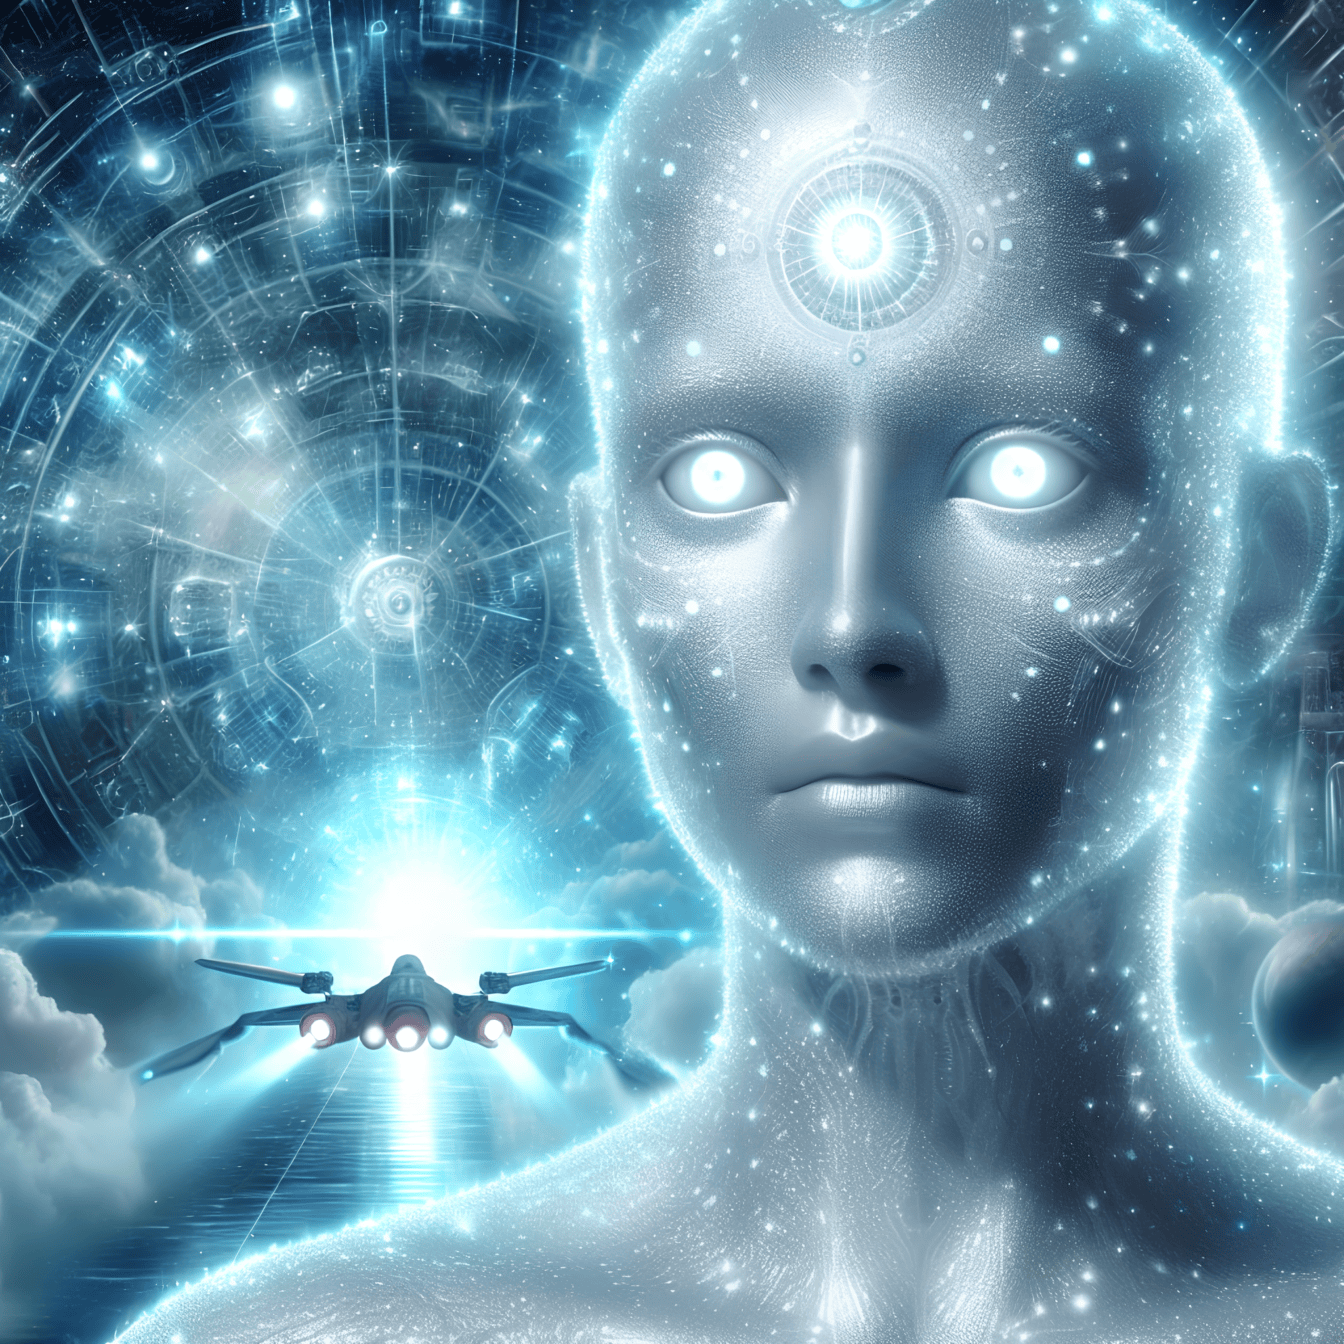 Um ciborgue extraterrestre de inteligência artificial um alienígena humanoide com nave espacial ao fundo